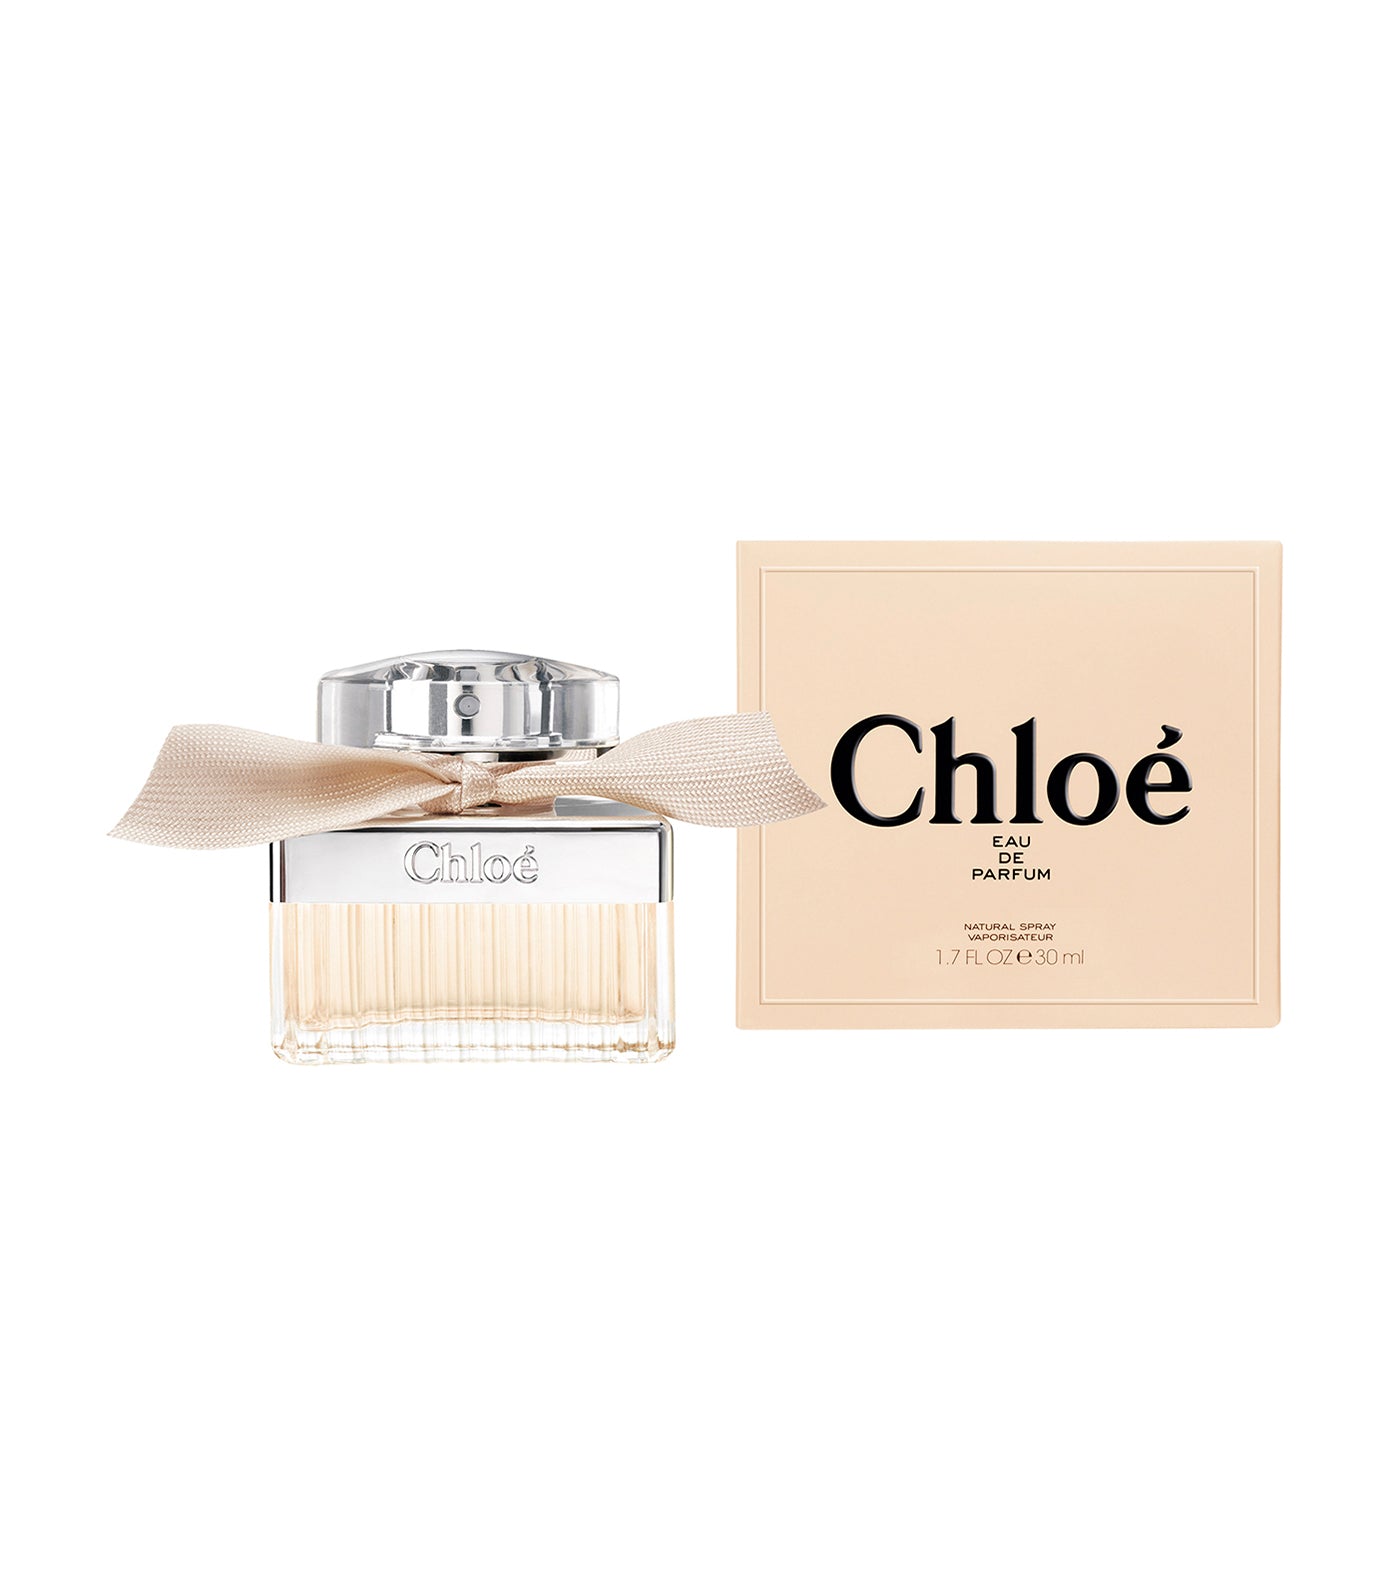 Chloé Eau de Parfum by Chloé 30ml